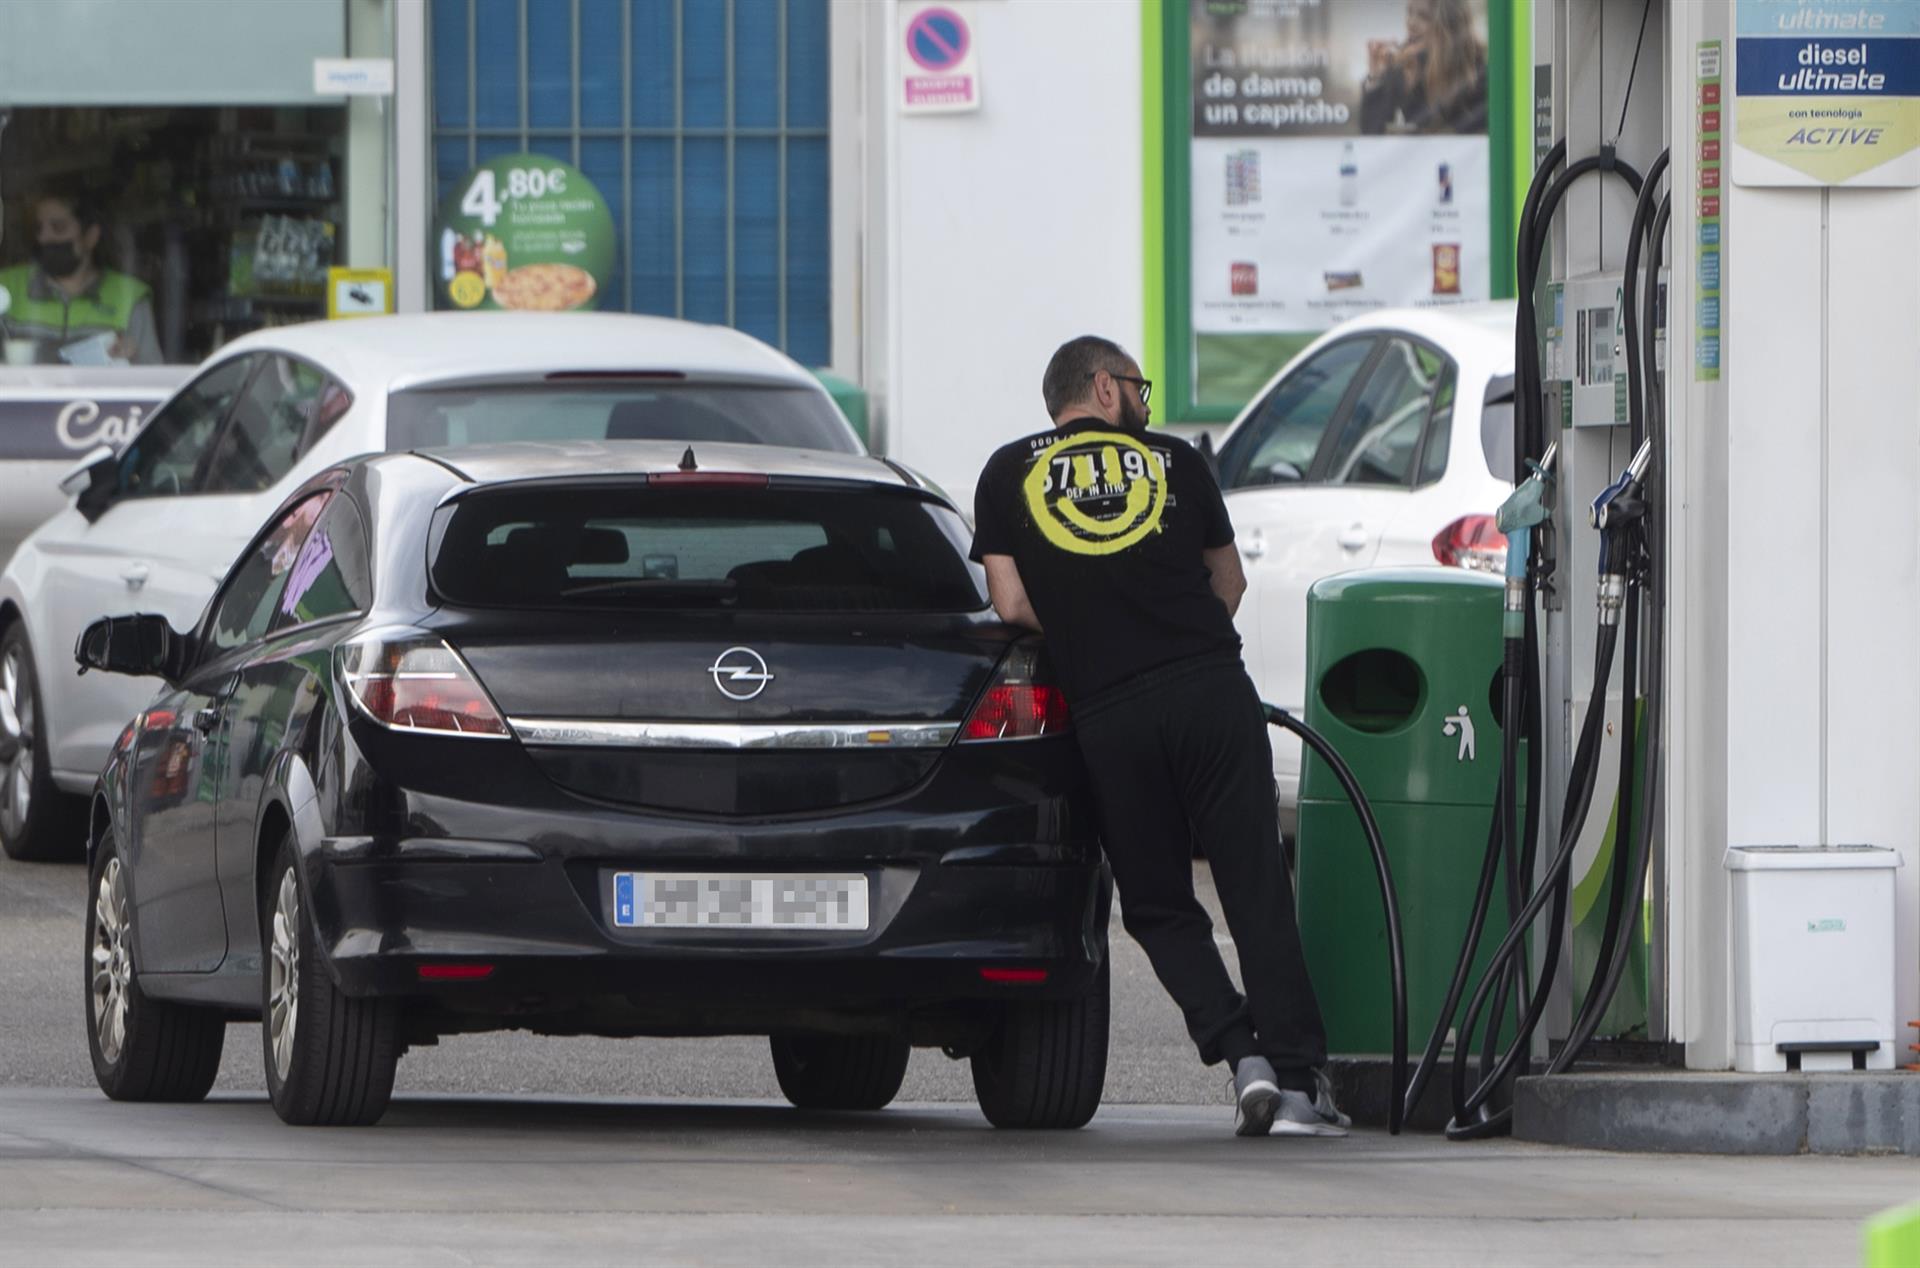 los-precios-de-los-carburantes,-que-pierden-la-cota-de-1,5-euros,-vuelven-a-bajar